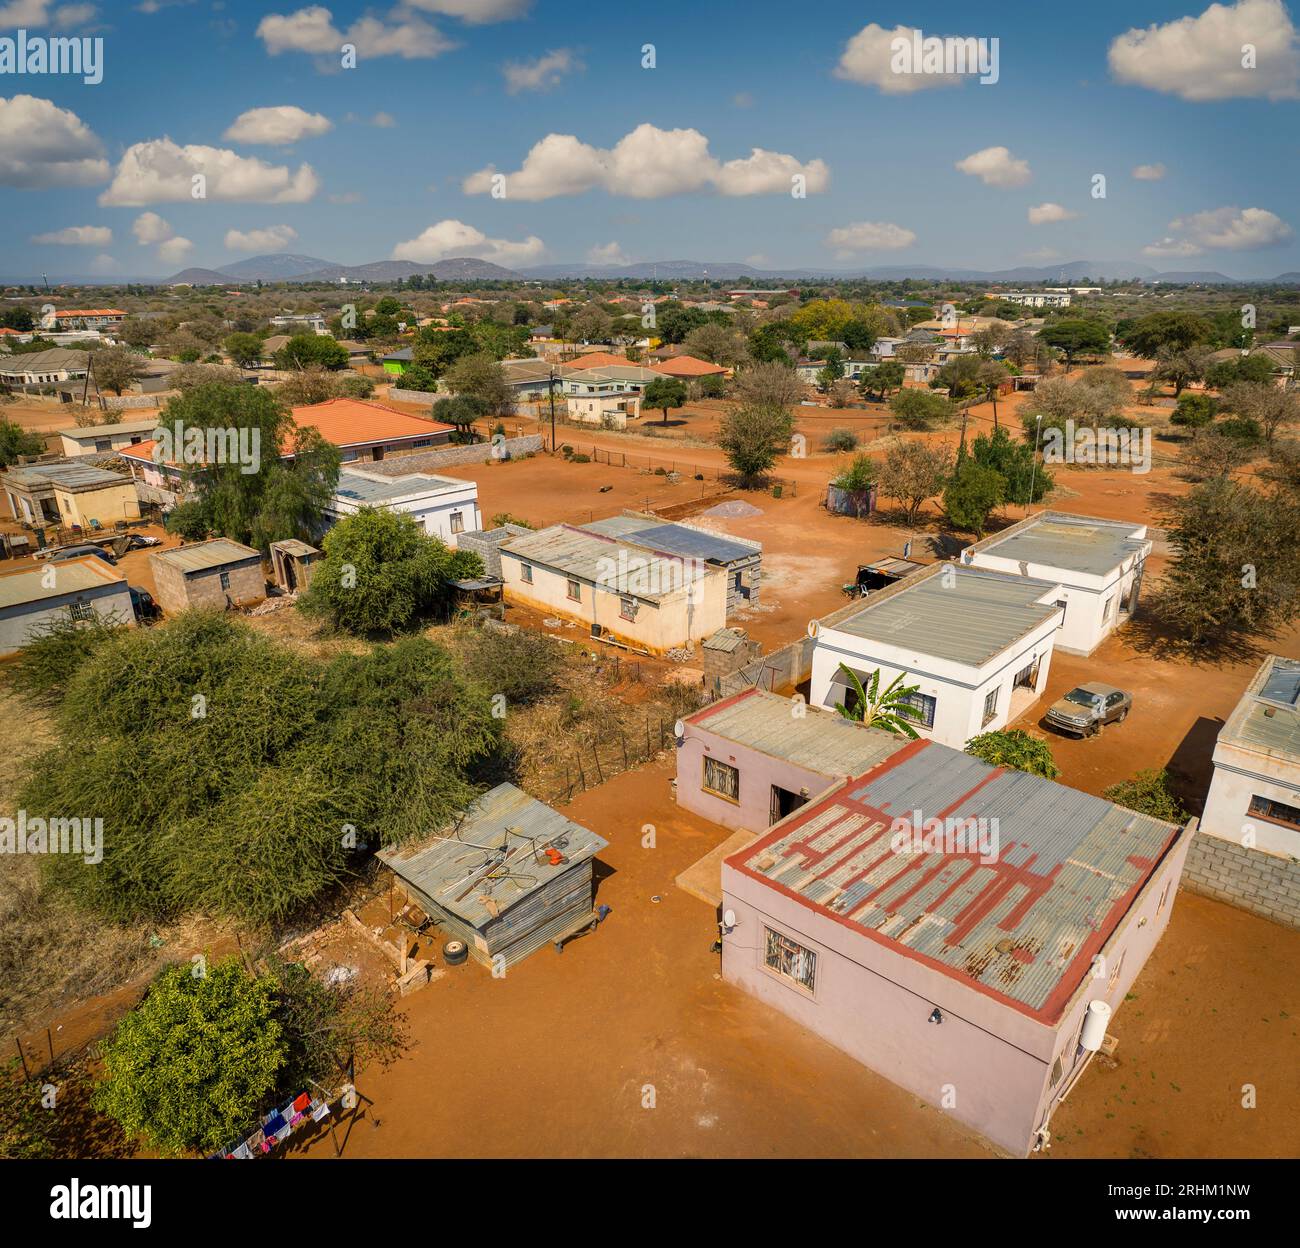 Luftaufnahme des typischen modernen afrikanischen Dorfes in botswana, mit staubigen unbefestigten Straßen und kubischen Gebäuden Stockfoto